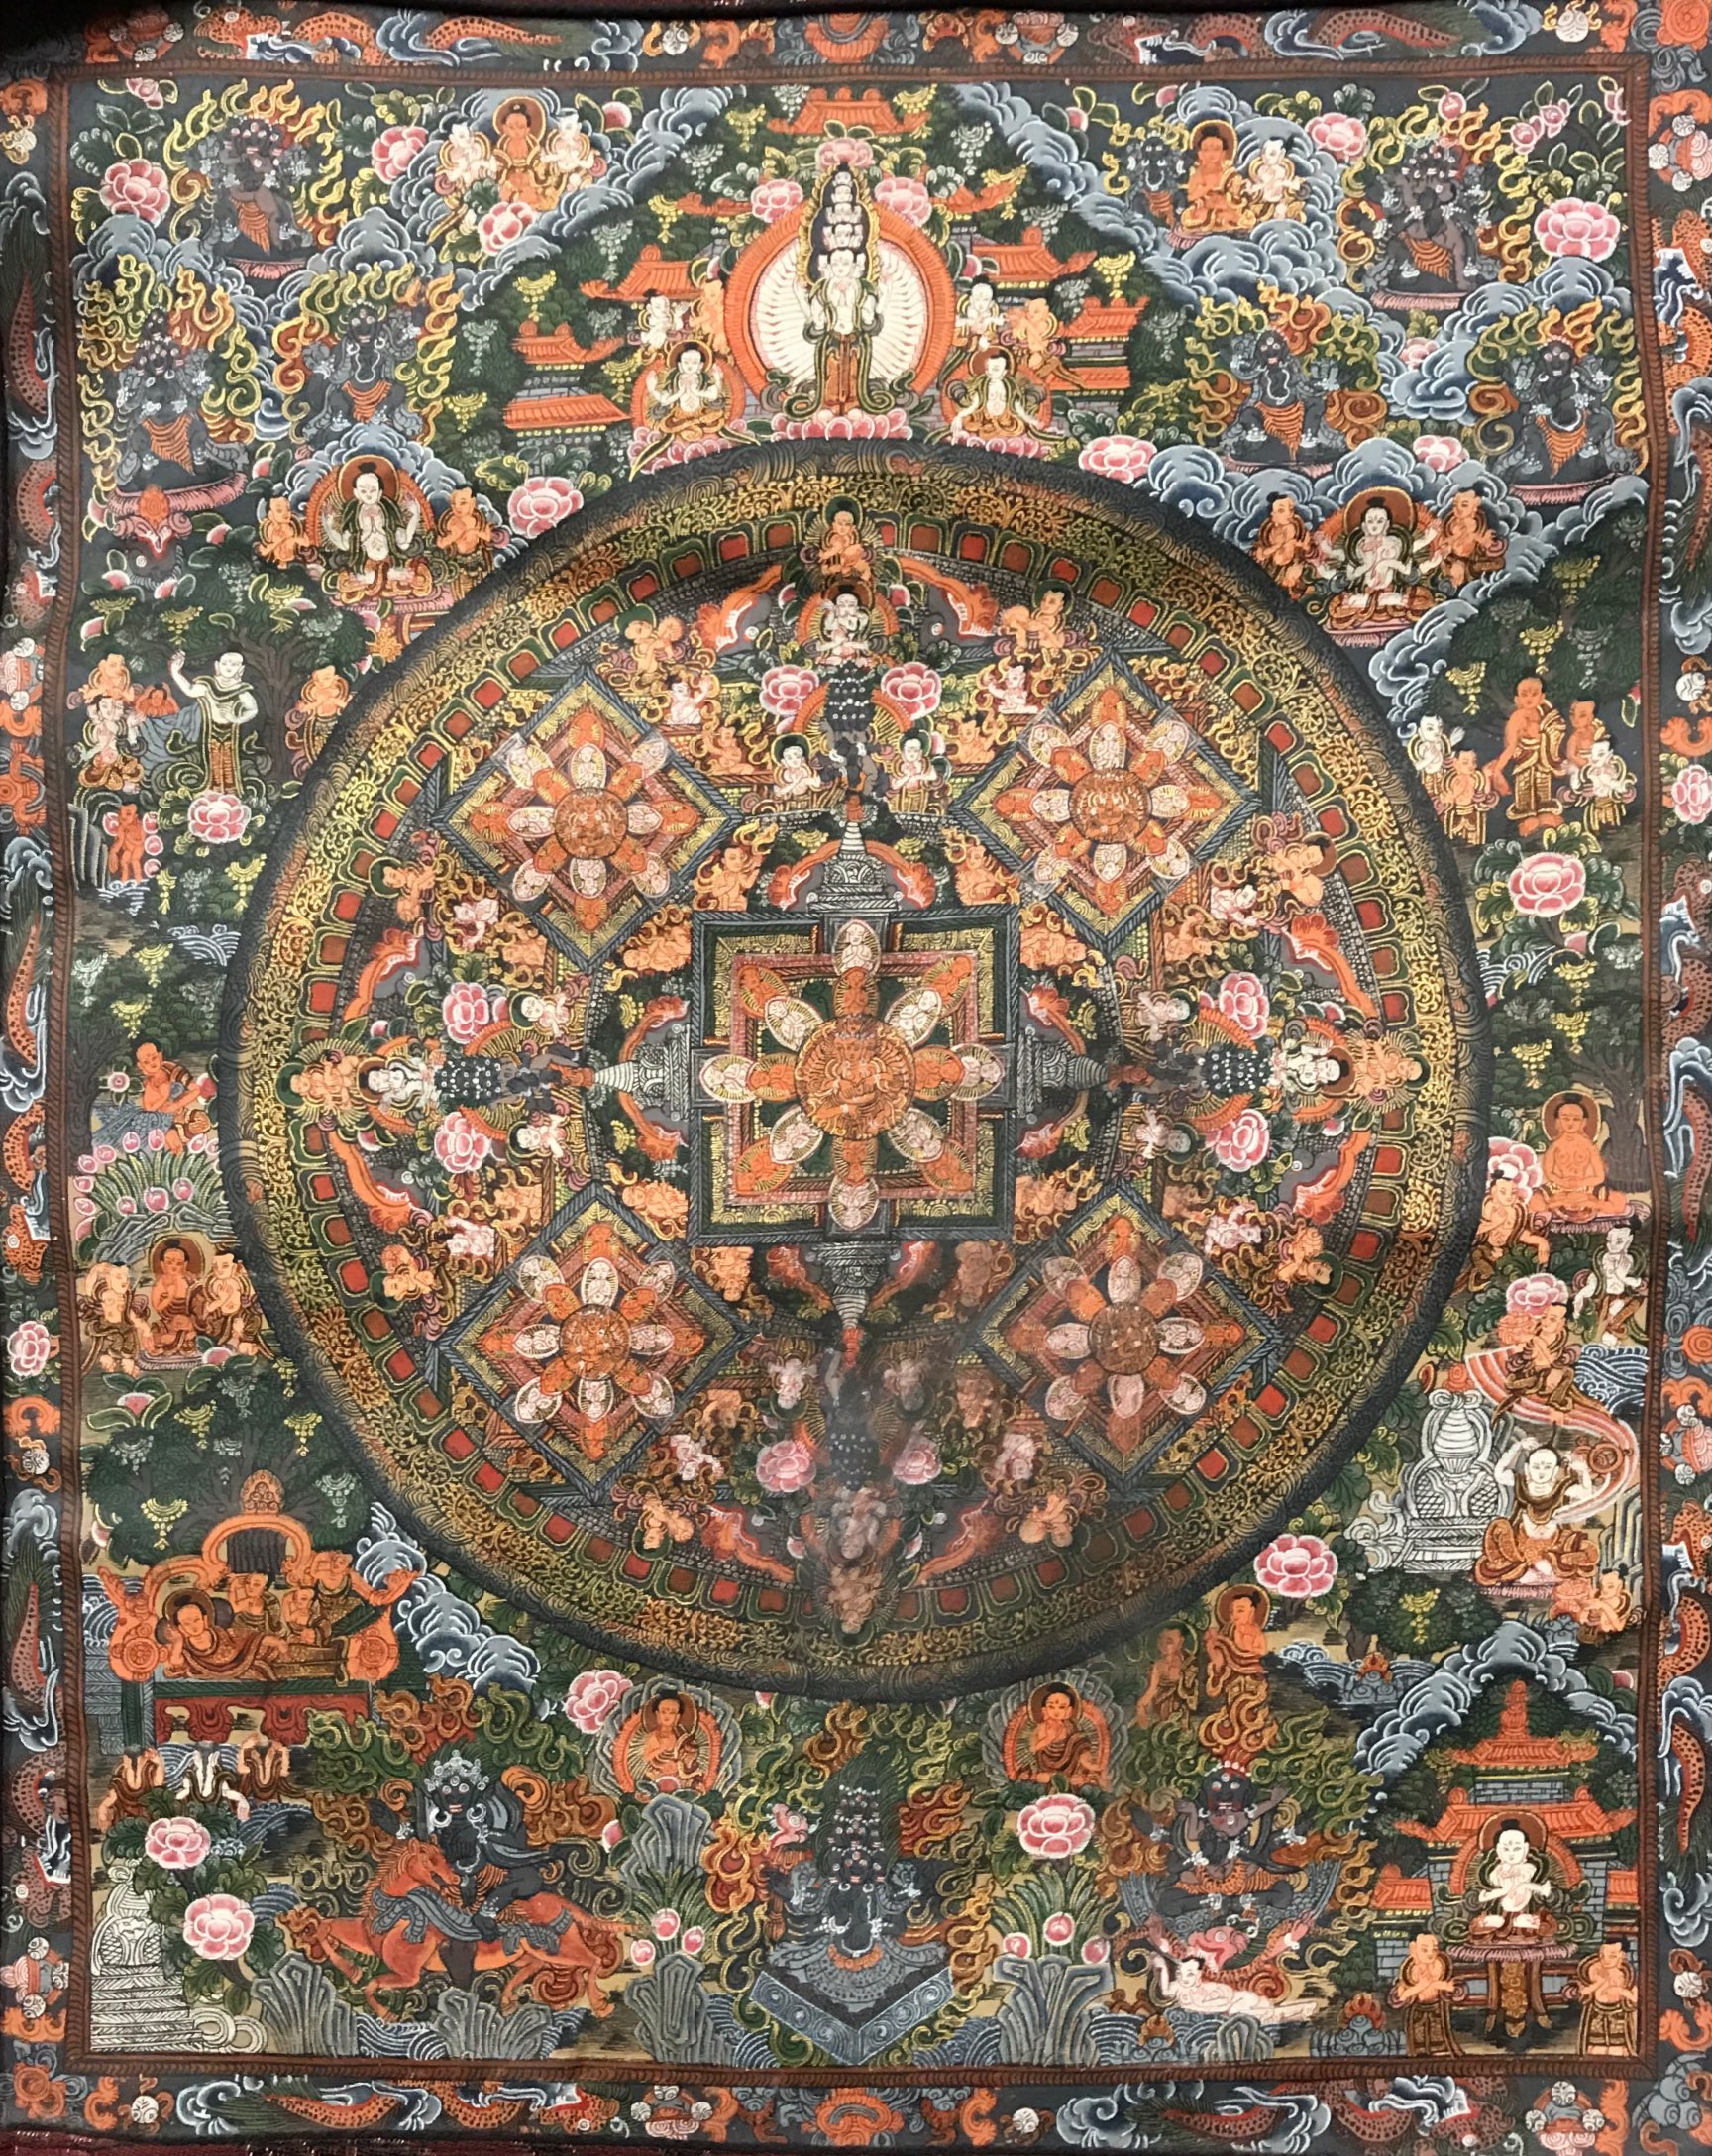 A Tibetan hand painted and gilt Mandala thangka, 70 x 60 cm. - Image 2 of 3